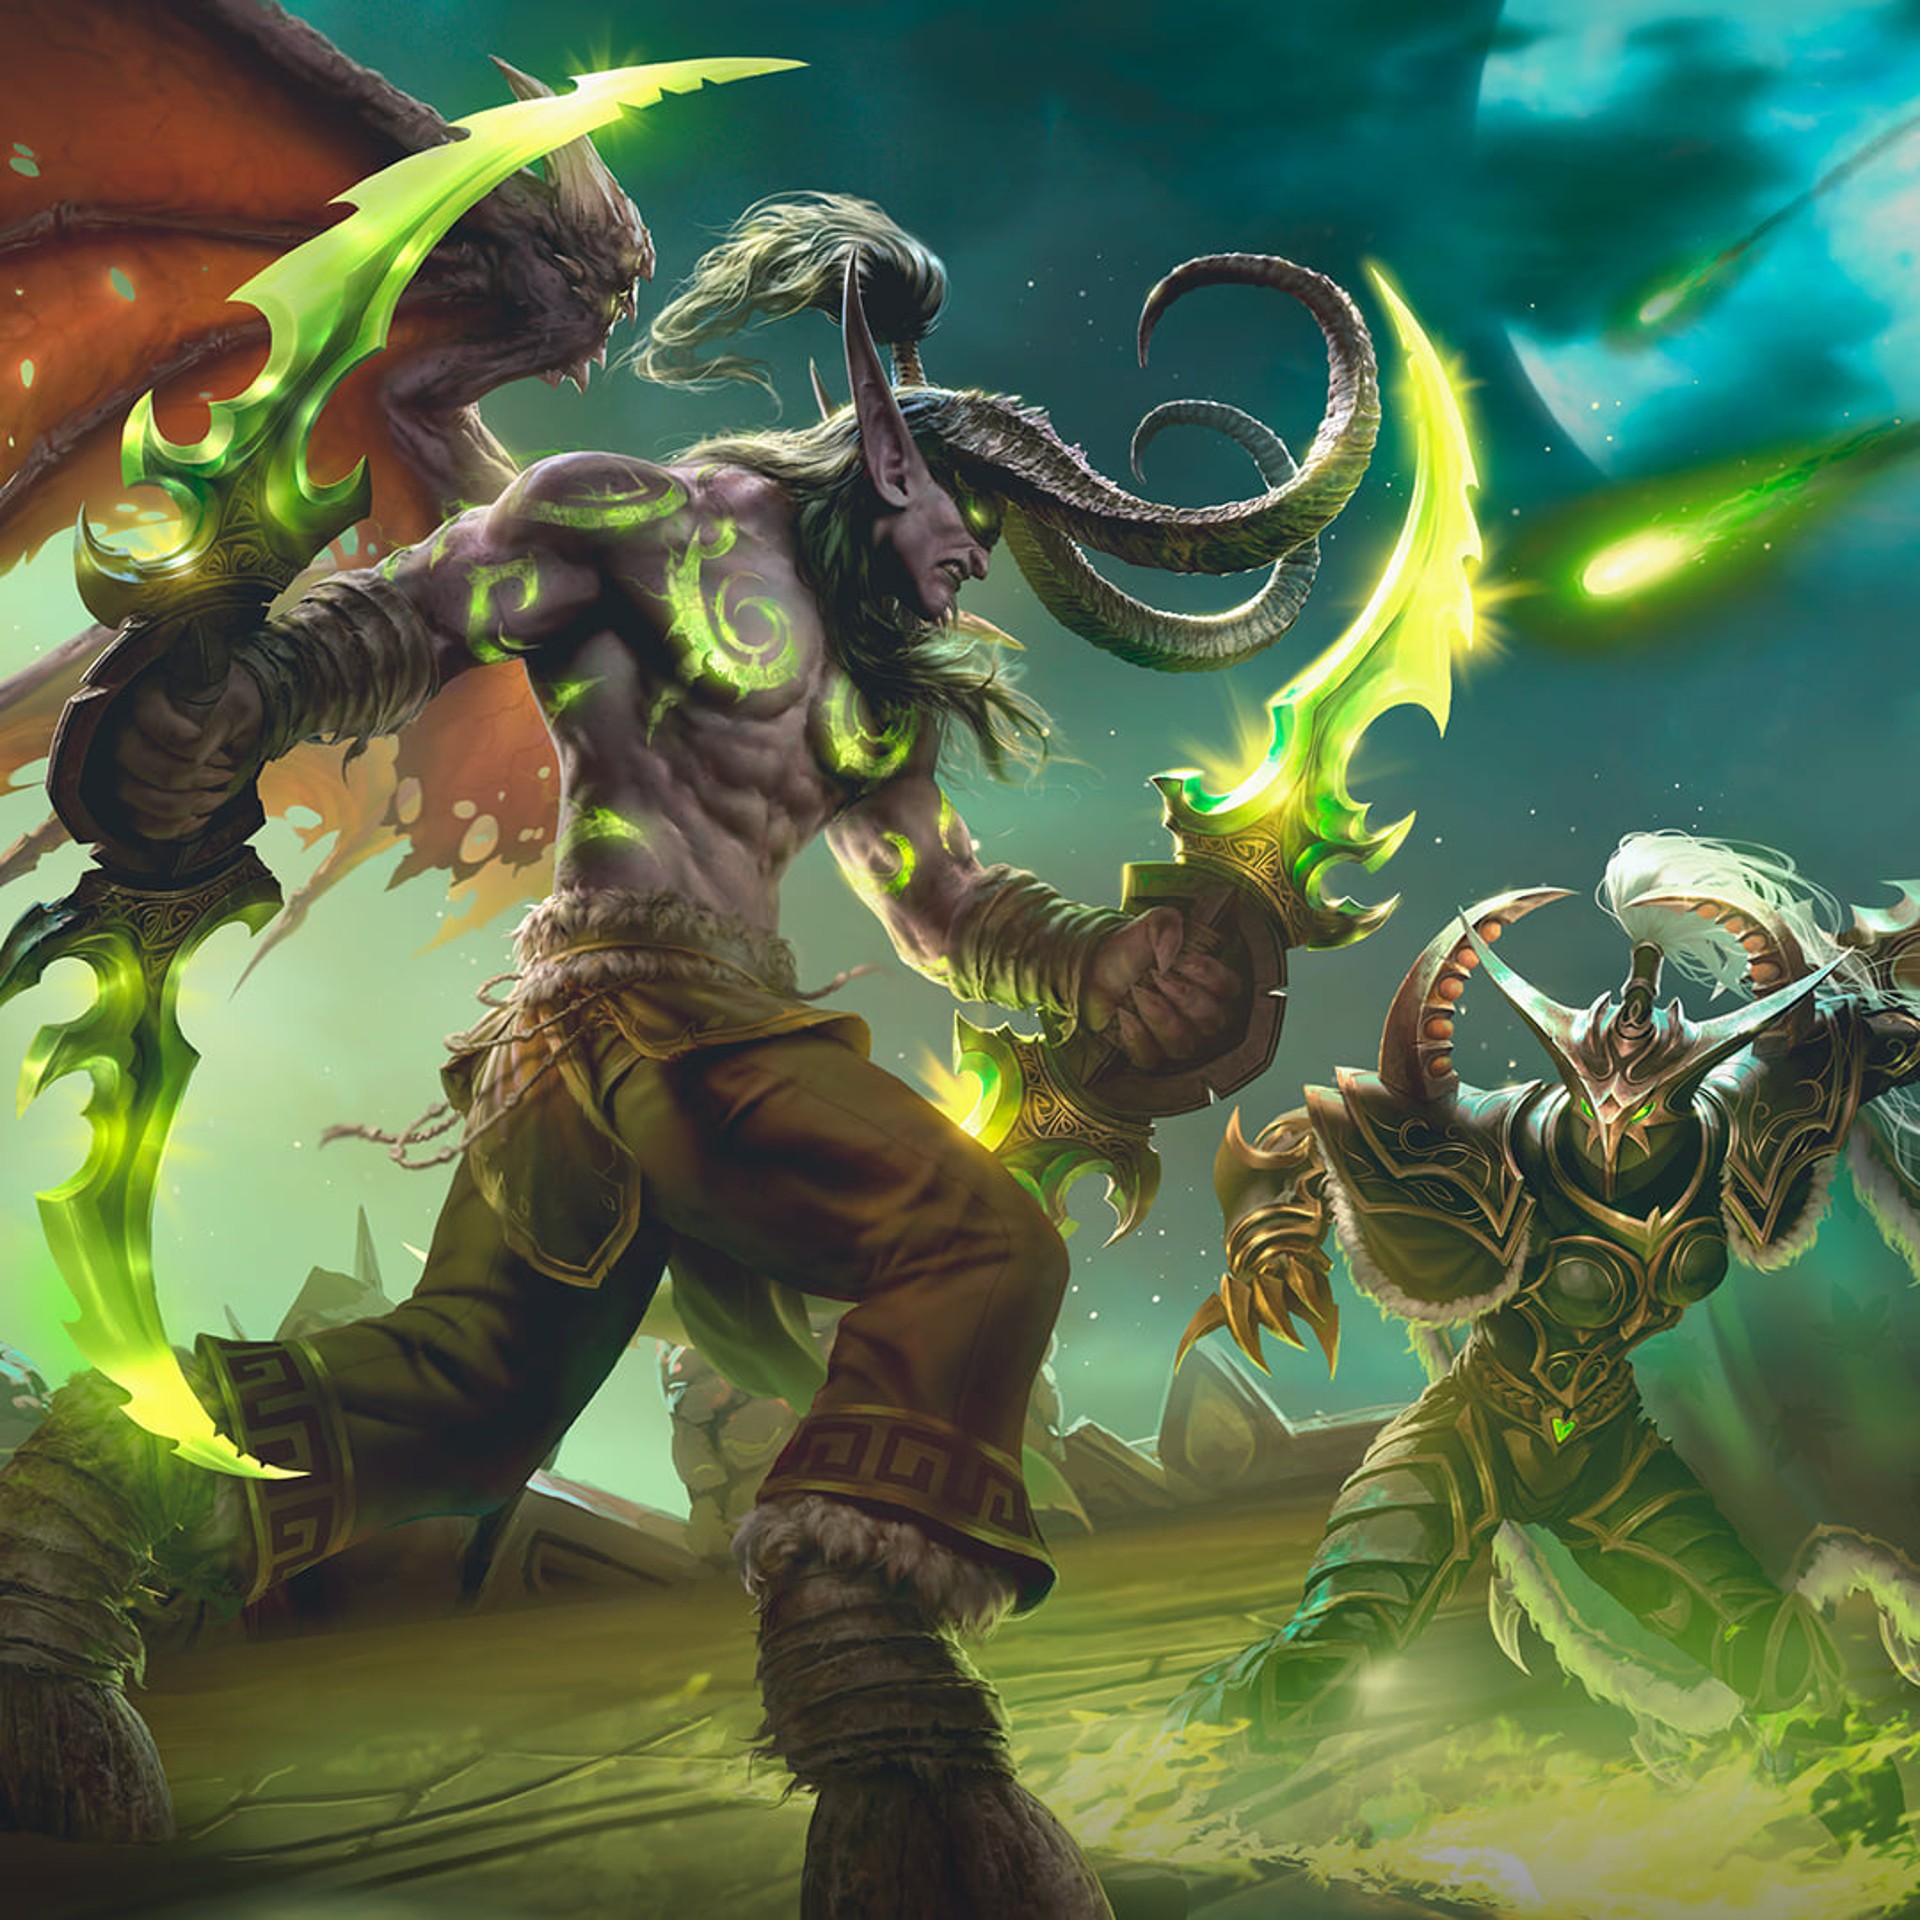 Blizzard กำลังพัฒนา Warcraft ฉบับมือถือ พร้อมเปิดตัวภายในปีนี้